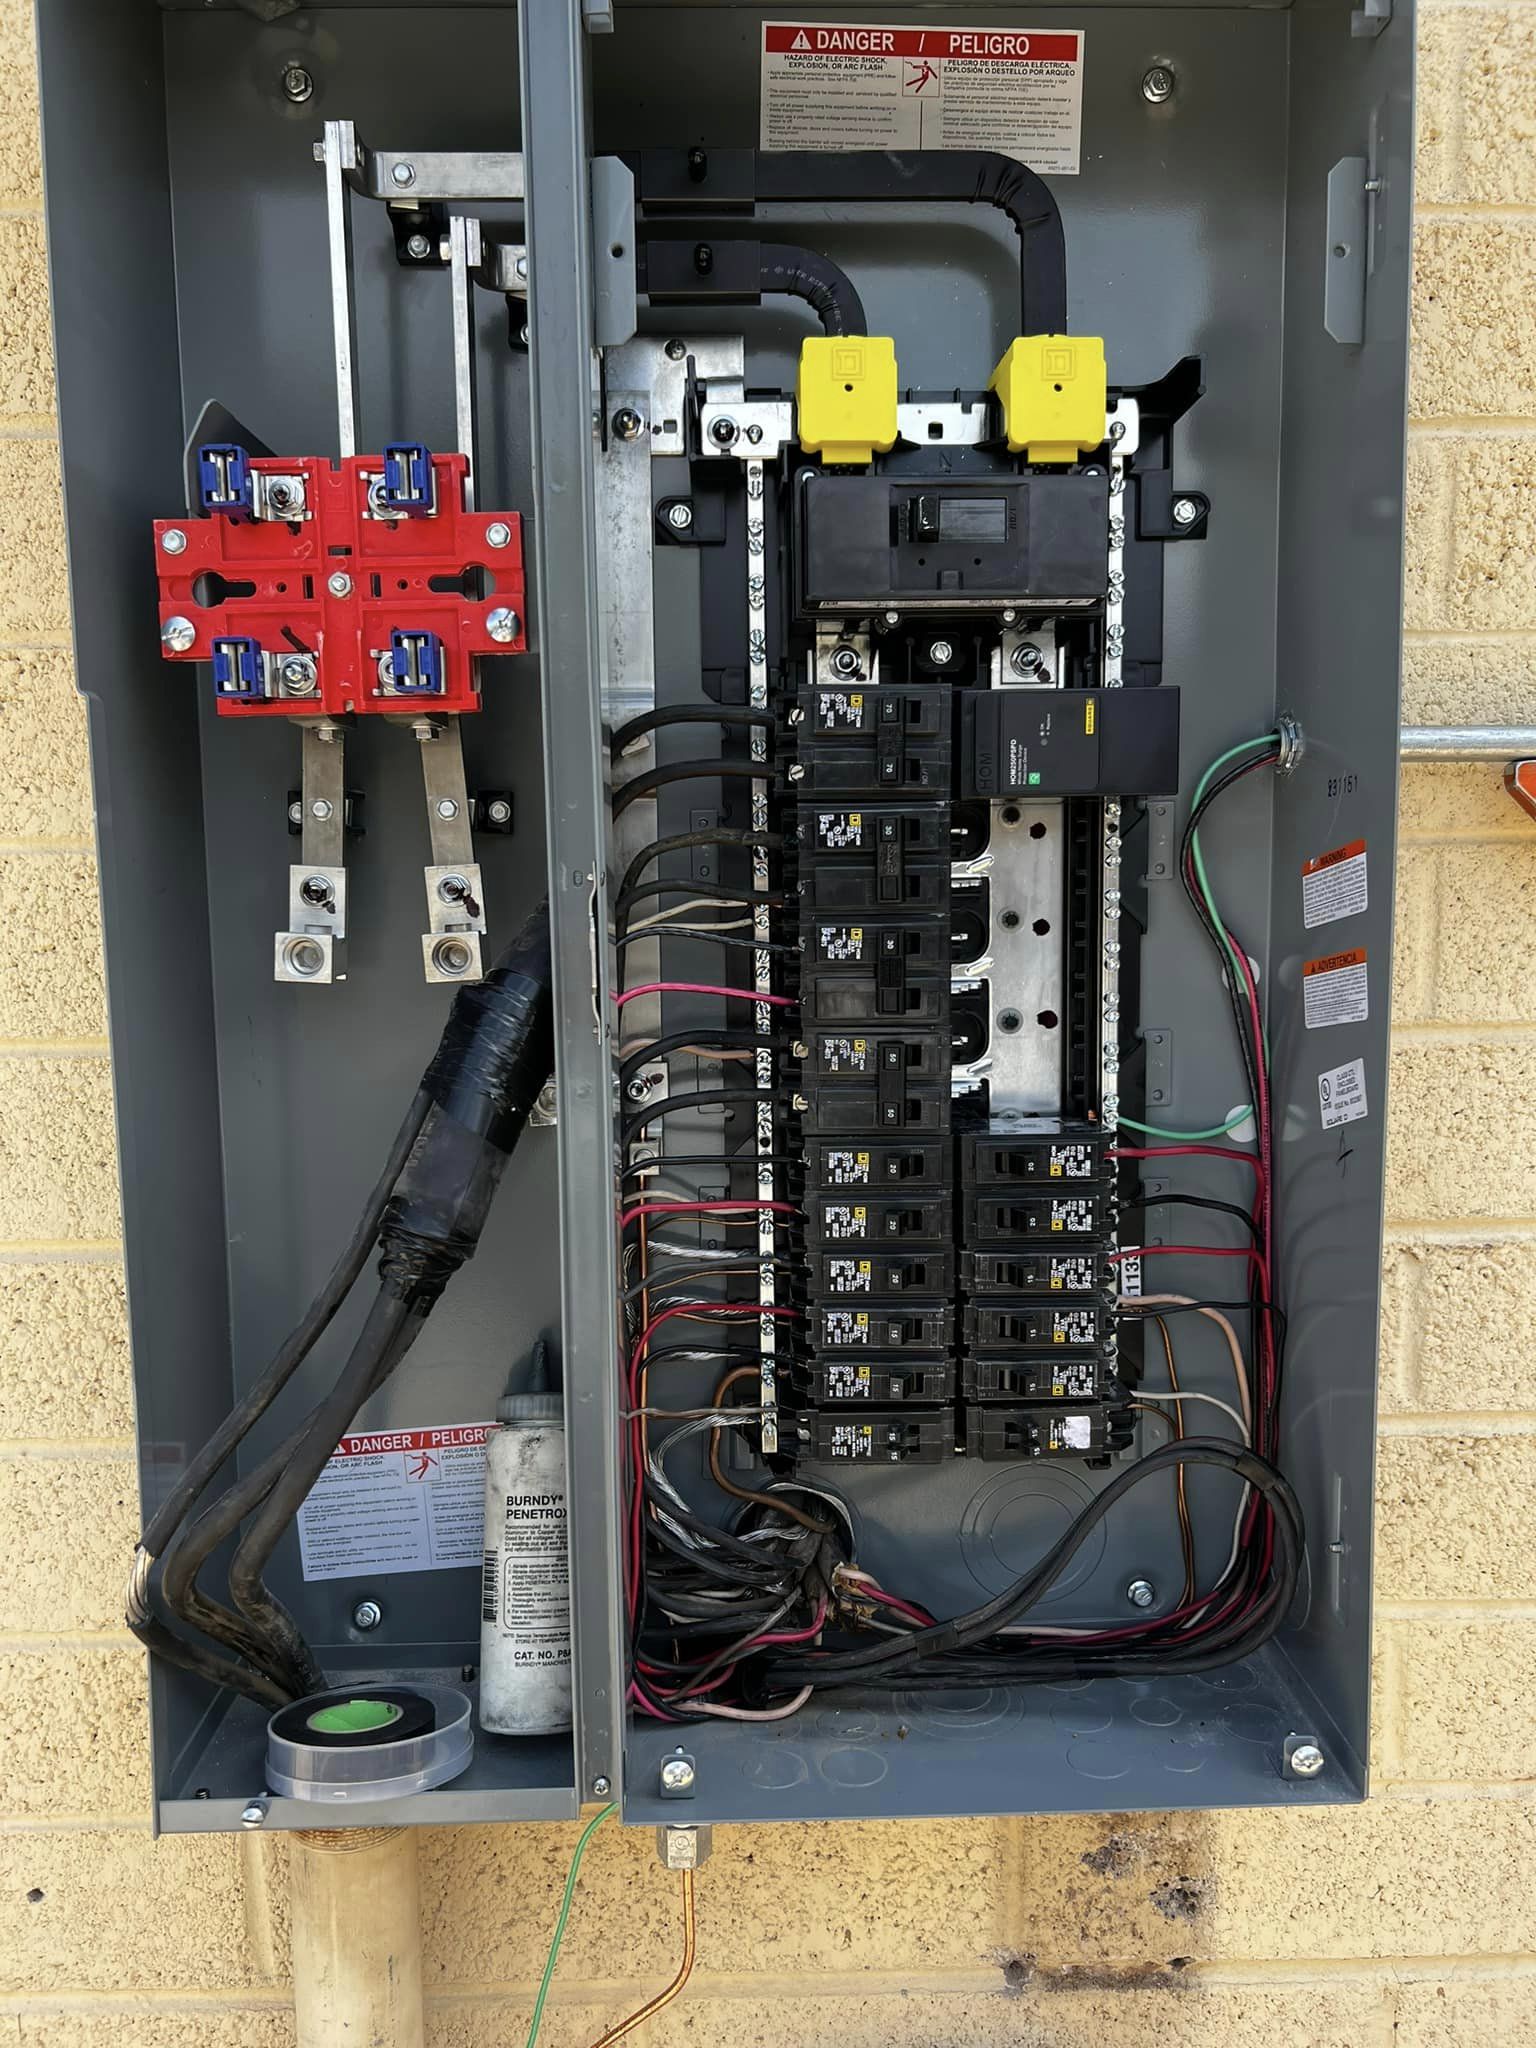 Photos shows an open electrical panel